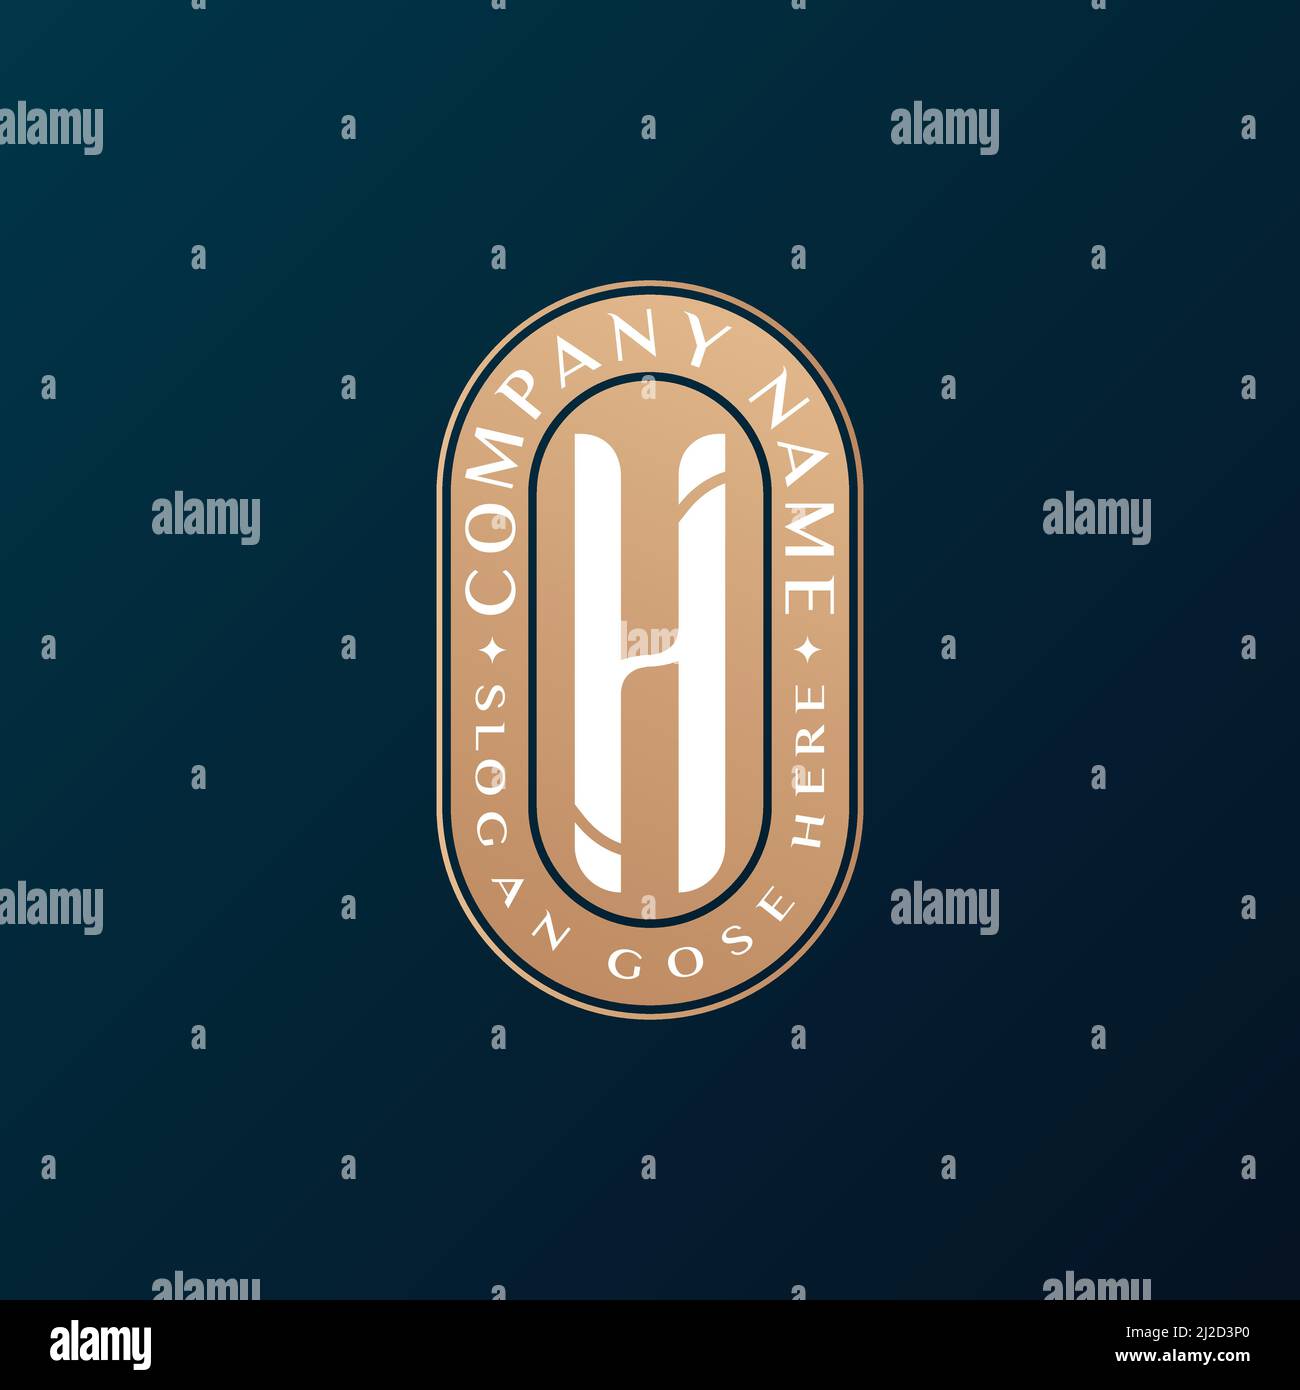 Abstrait Emblem Premium luxe identité d'entreprise élégante lettre H logo design Illustration de Vecteur